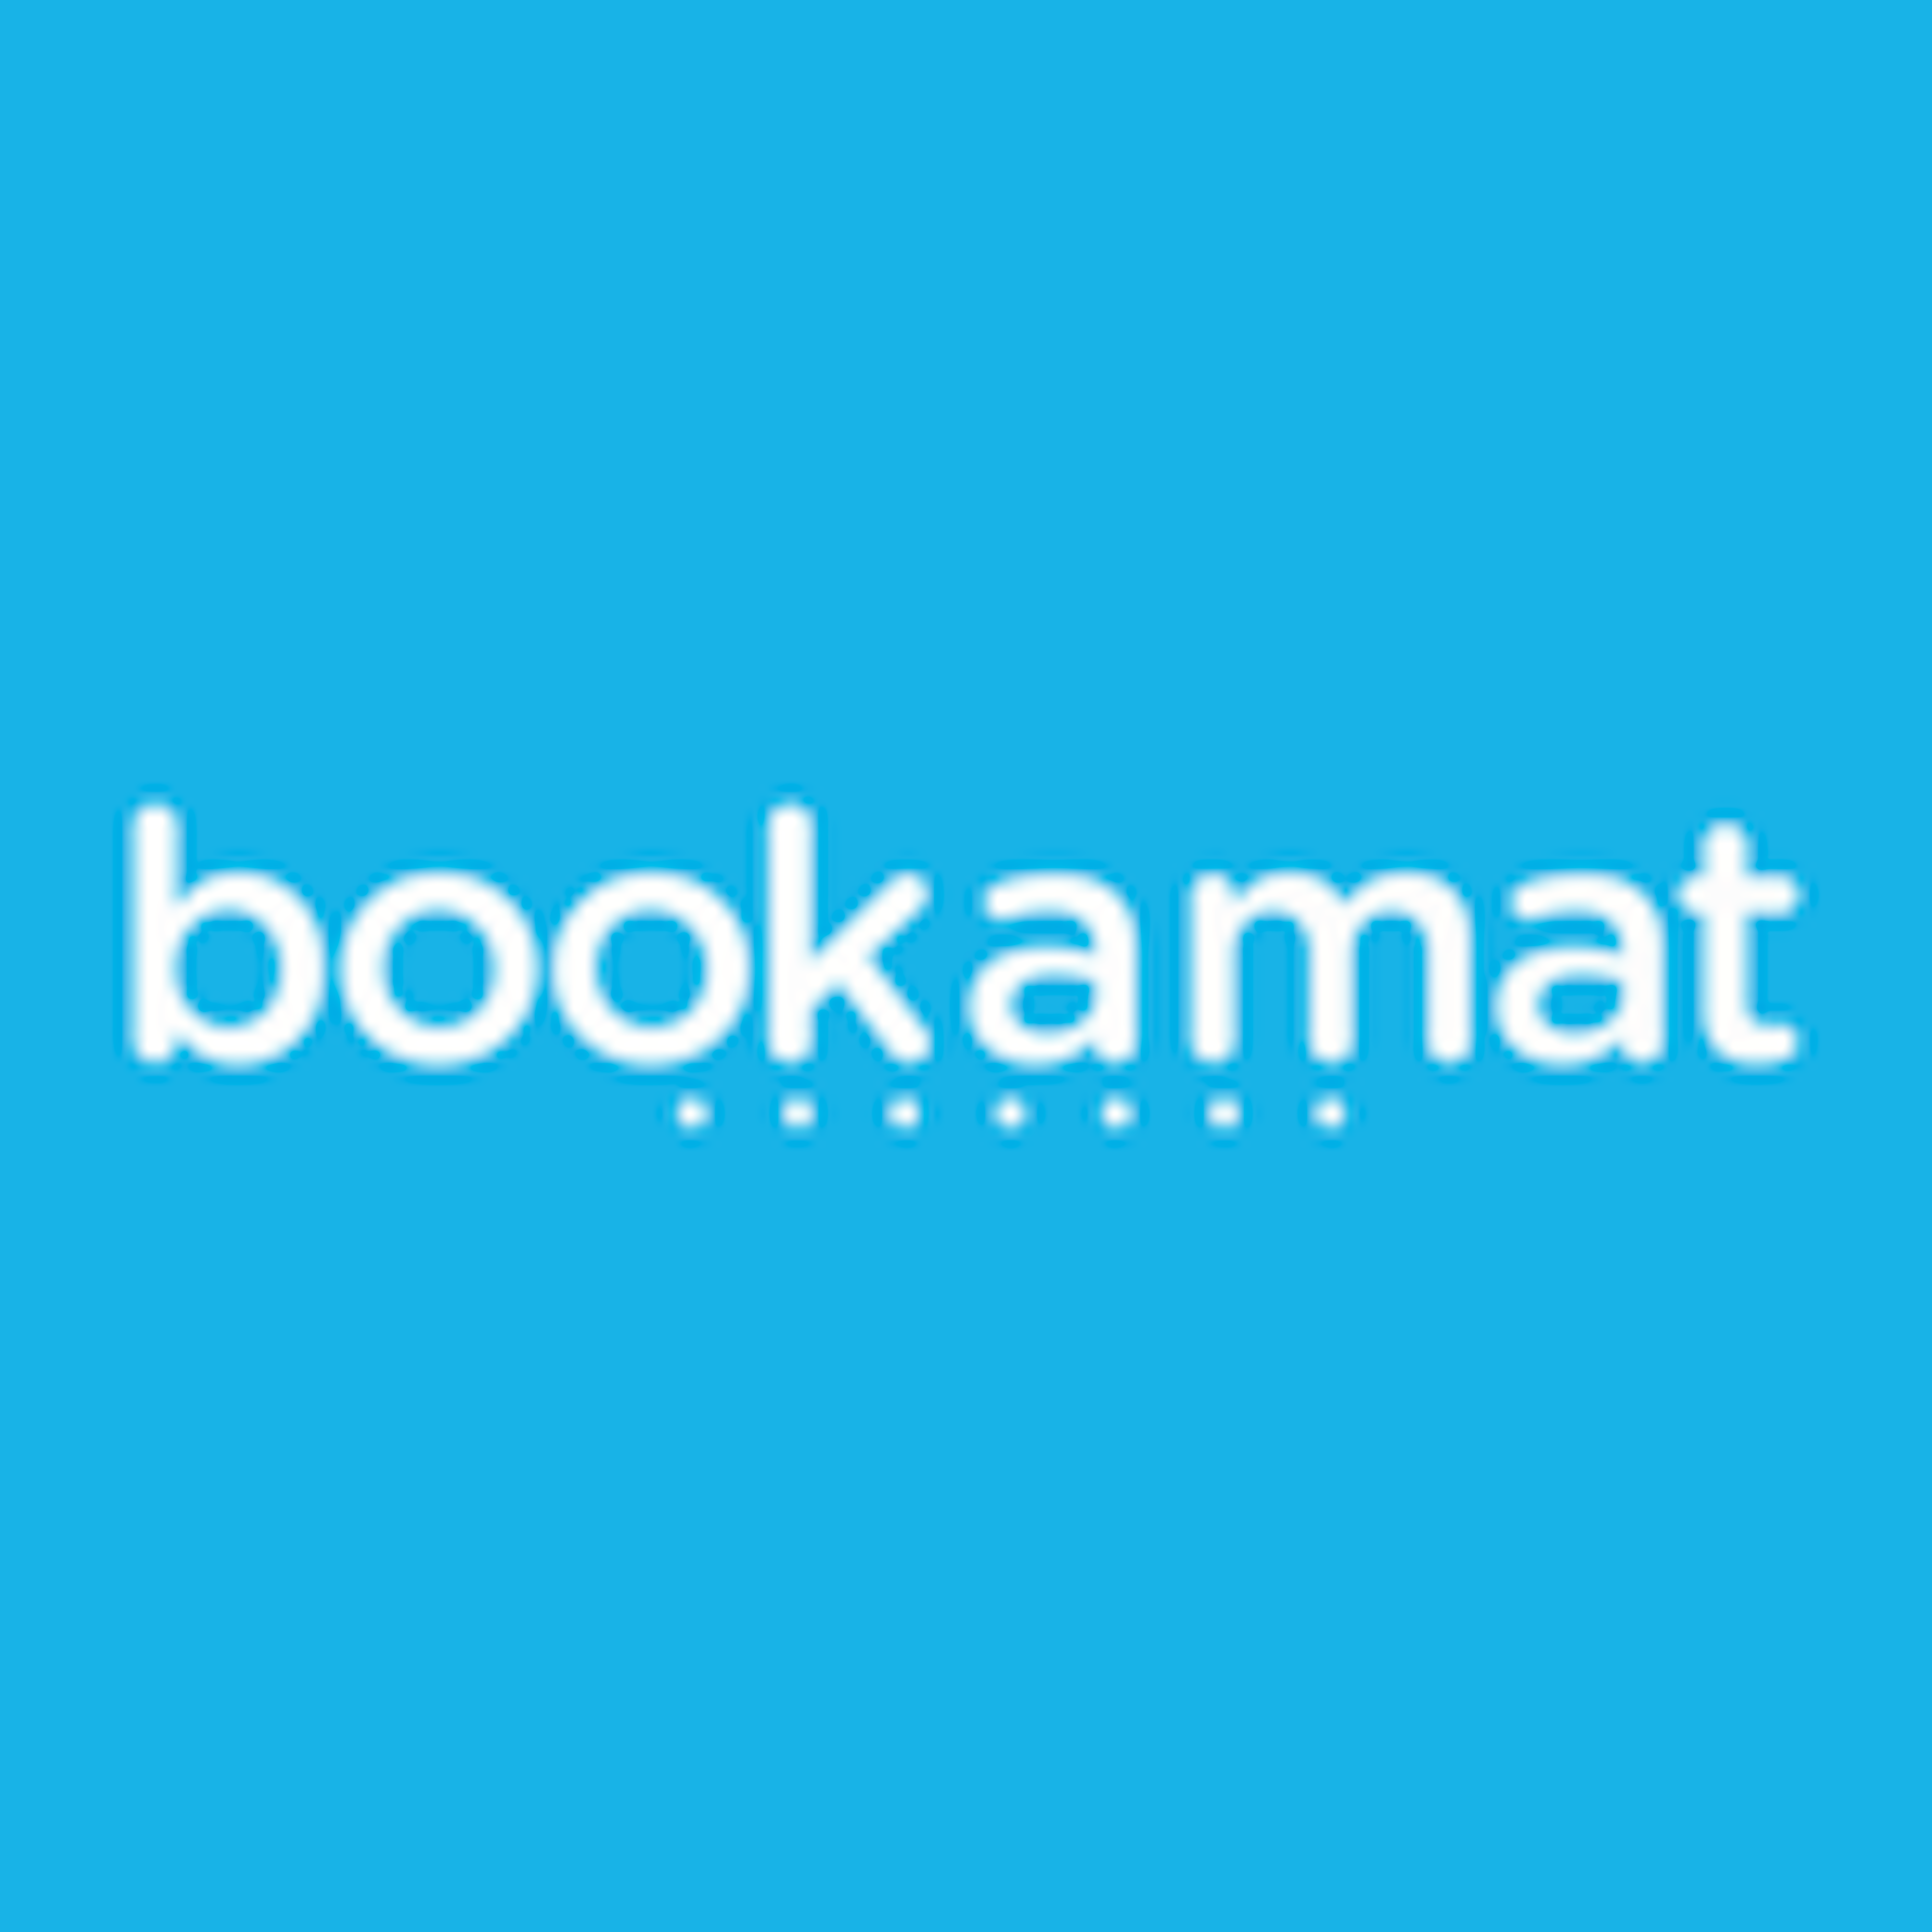 Bookamat Logo